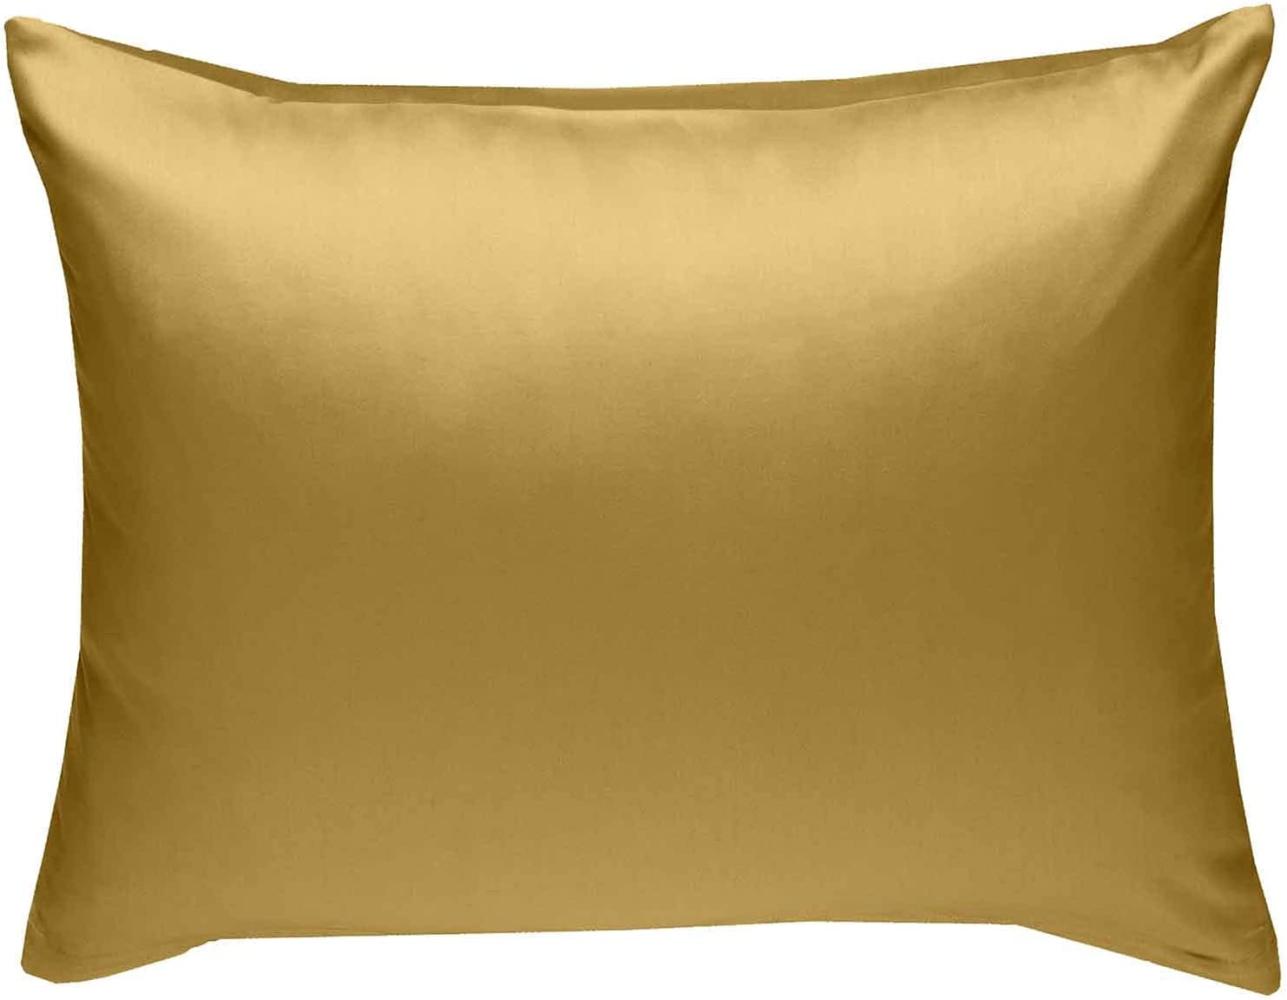 Bettwaesche-mit-Stil Mako-Satin / Baumwollsatin Bettwäsche uni / einfarbig gold Kissenbezug 60x80 cm Bild 1